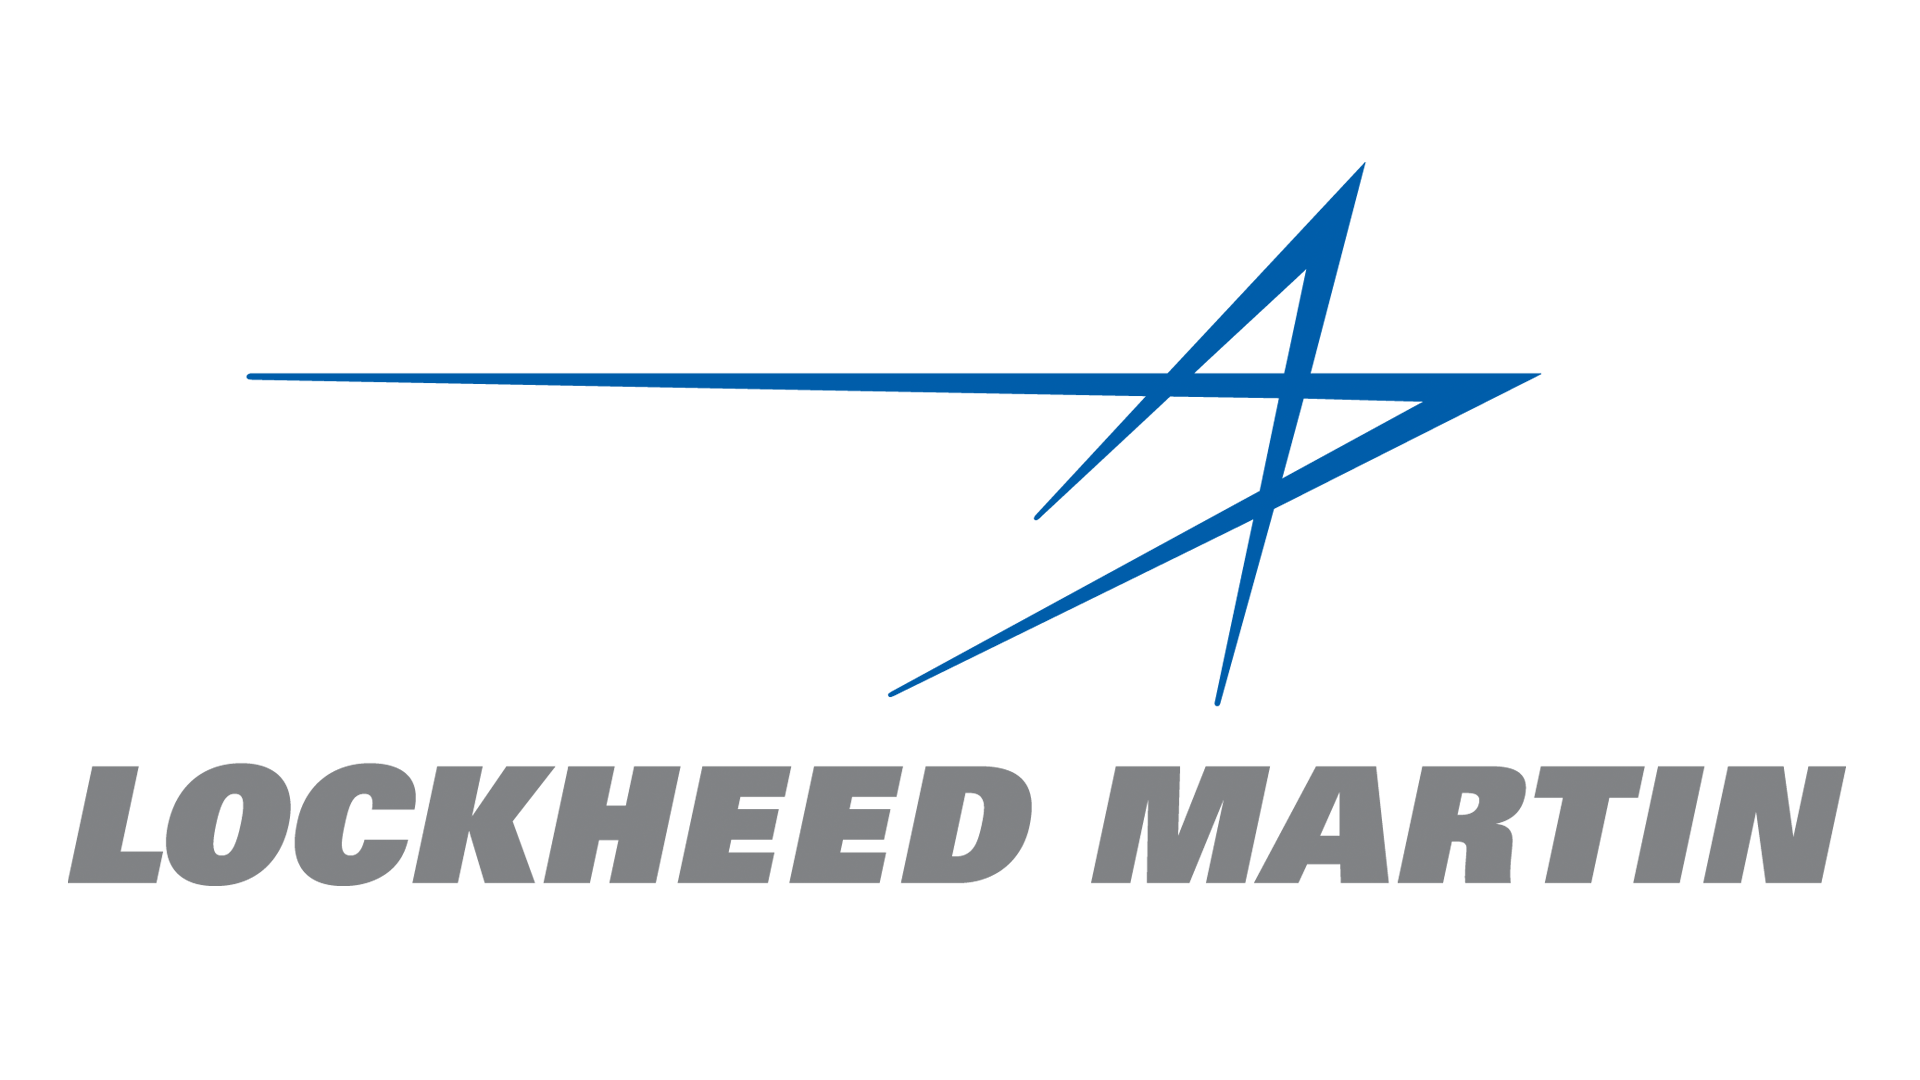 Lockheed Martin Logo - Image - Lockheed-martin-logo.png | Logopedia | FANDOM powered by Wikia